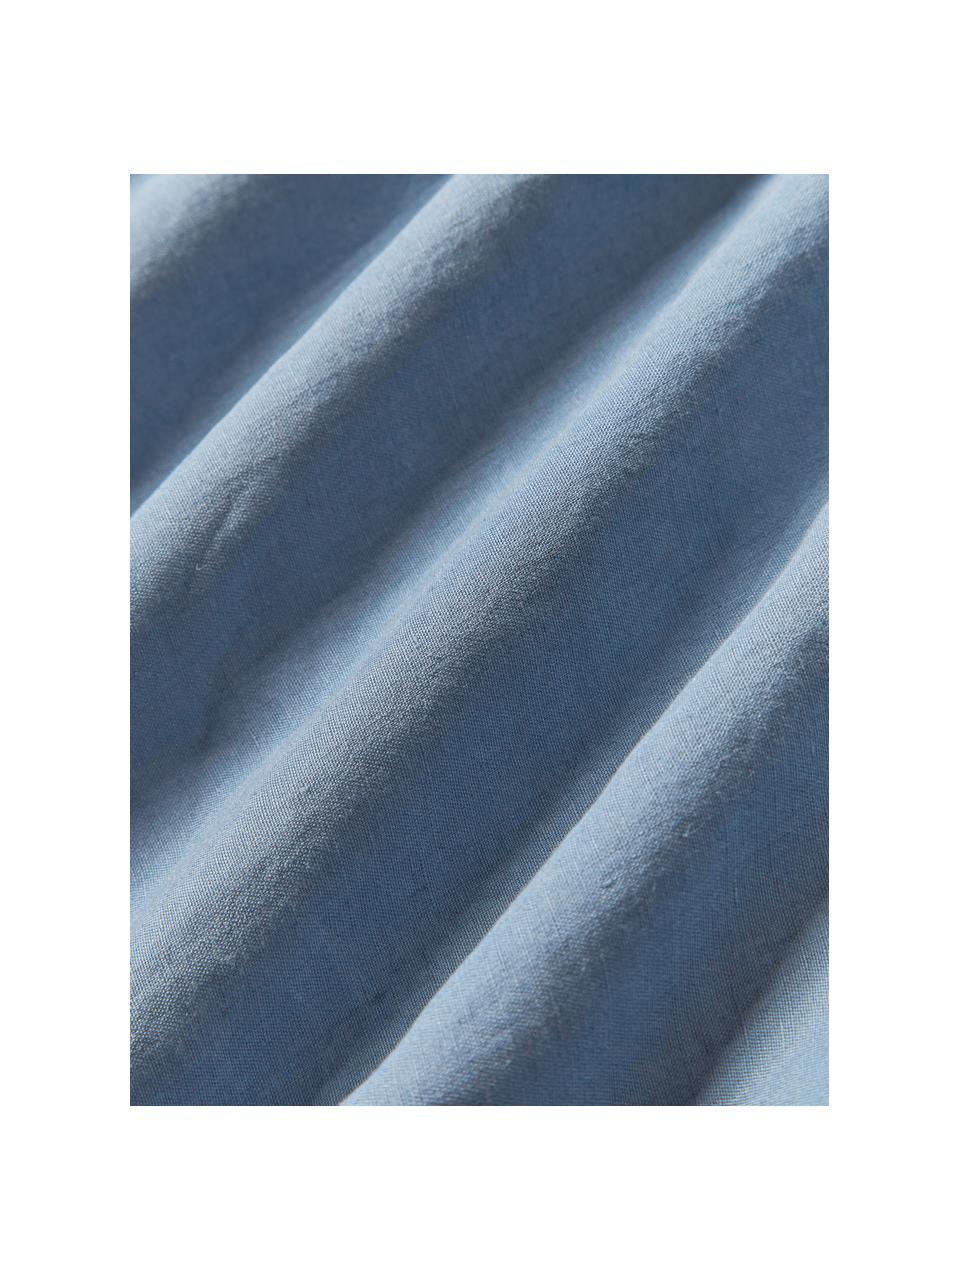 Drap plat en lin délavé Airy, 100 % pur lin
Densité 110 fils par pouce carré, qualité standard

Le lin est une fibre naturelle qui se caractérise par sa respirabilité, sa résistance et sa douceur. Le lin est un matériau rafraîchissant et absorbant qui absorbe et évacue rapidement l'humidité, ce qui le rend idéal pour les températures chaudes.

Le matériau est certifié STANDARD 100 OEKO-TEX®, 15.HIN.65948, HOHENSTEIN HTTI, Bleu, larg. 240 x long. 280 cm